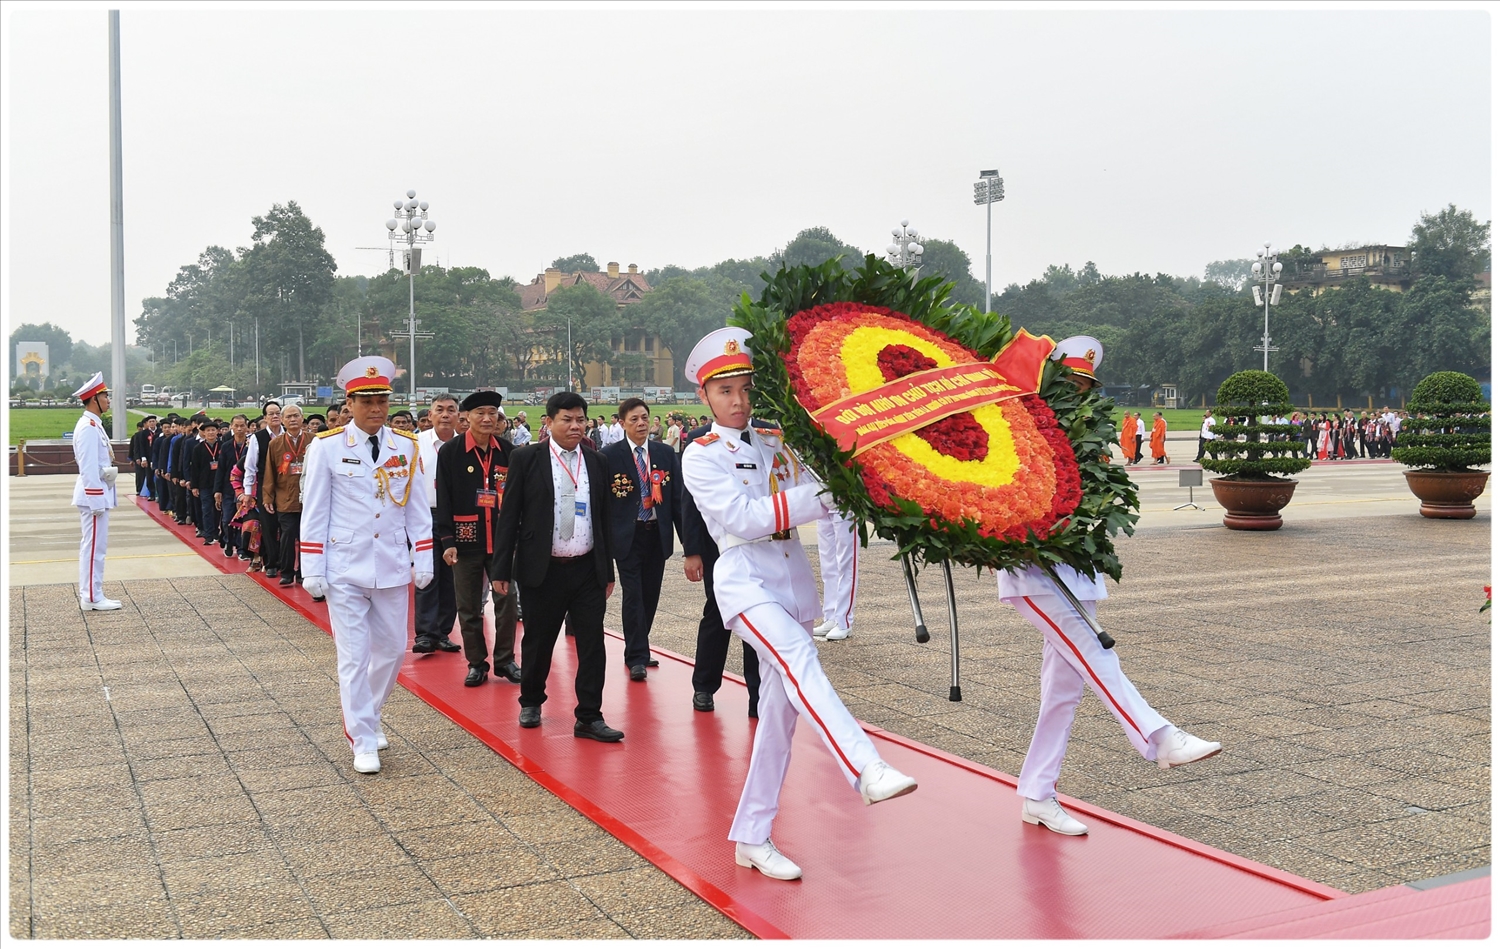 Vòng hoa của Đoàn đại biểu mang dòng chữ “Đời đời nhớ ơn Chủ tịch Hồ Chí Minh vĩ đại